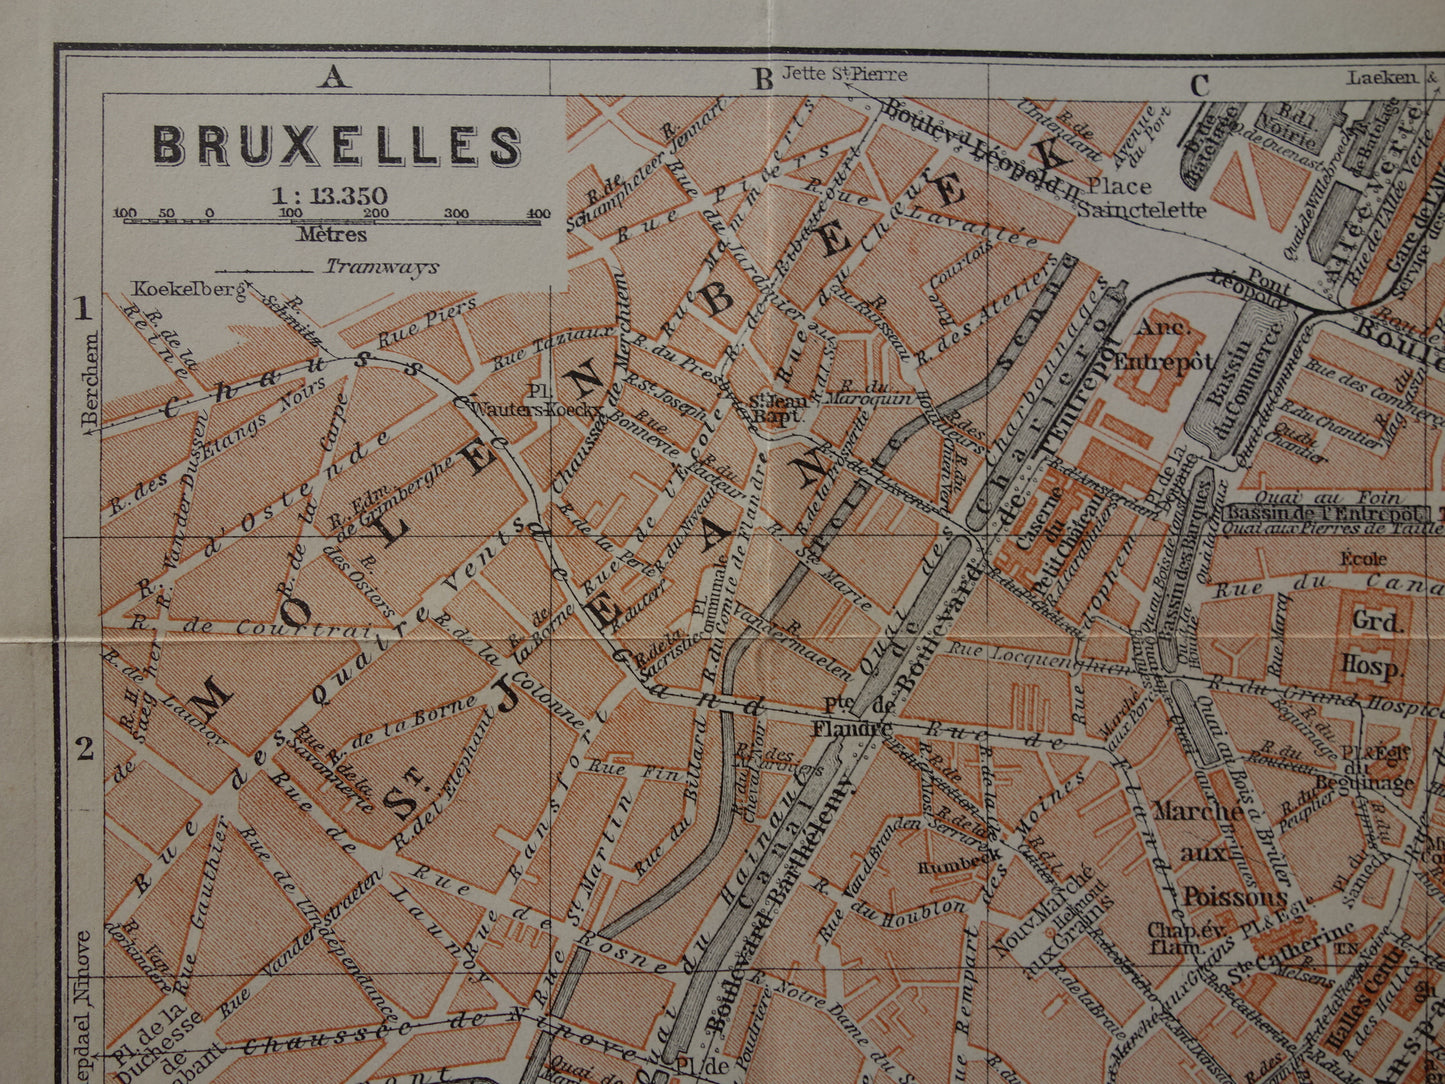 BRUSSEL oude kaart van Brussel België uit 1910 originele antieke historische plattegrond